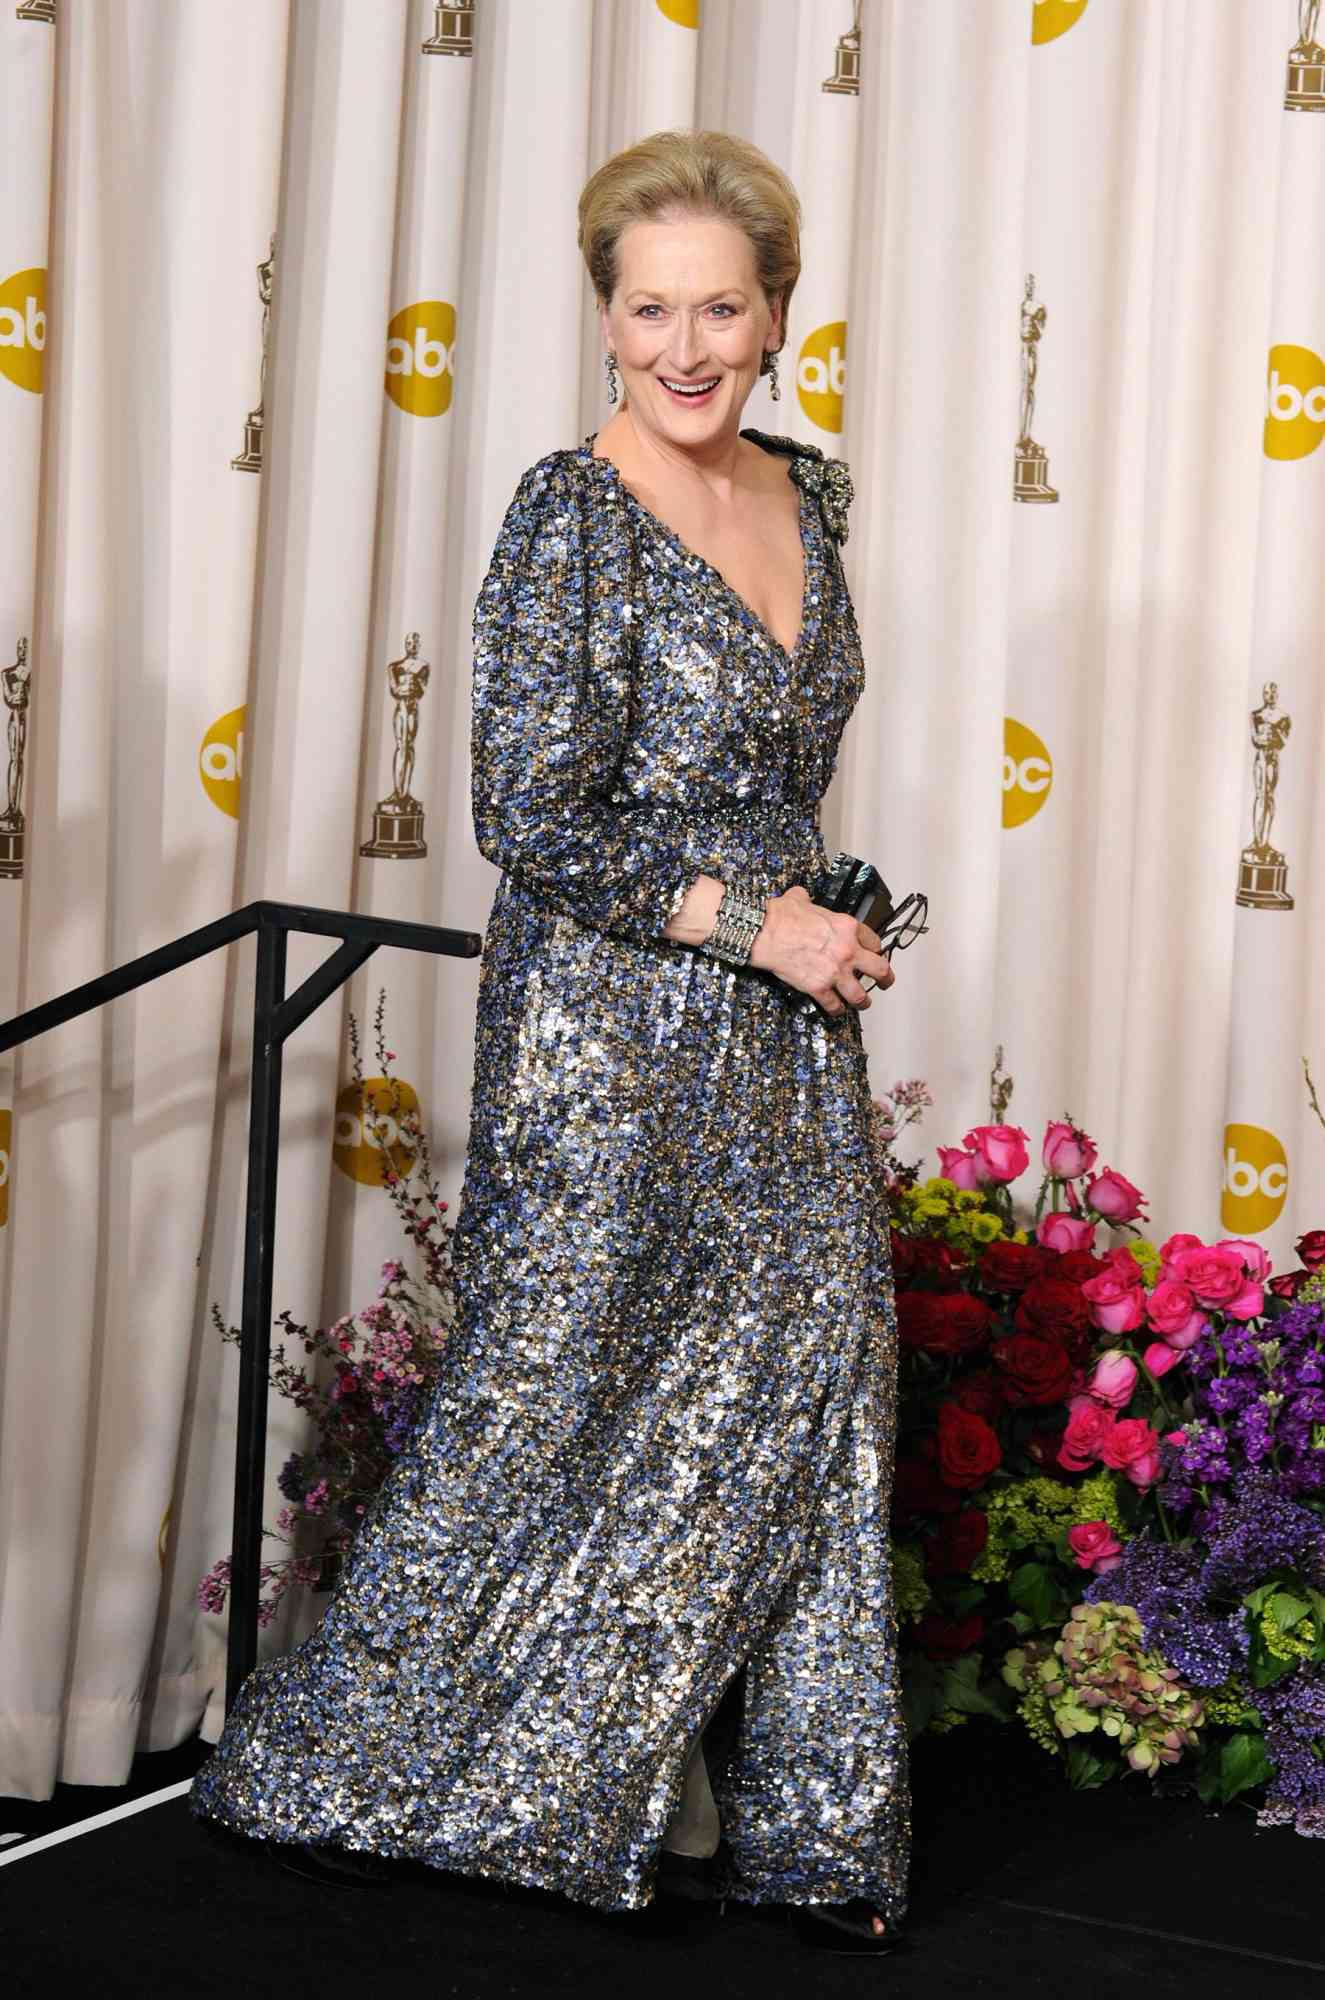 Meryl Streep at the 85th Academy Awards